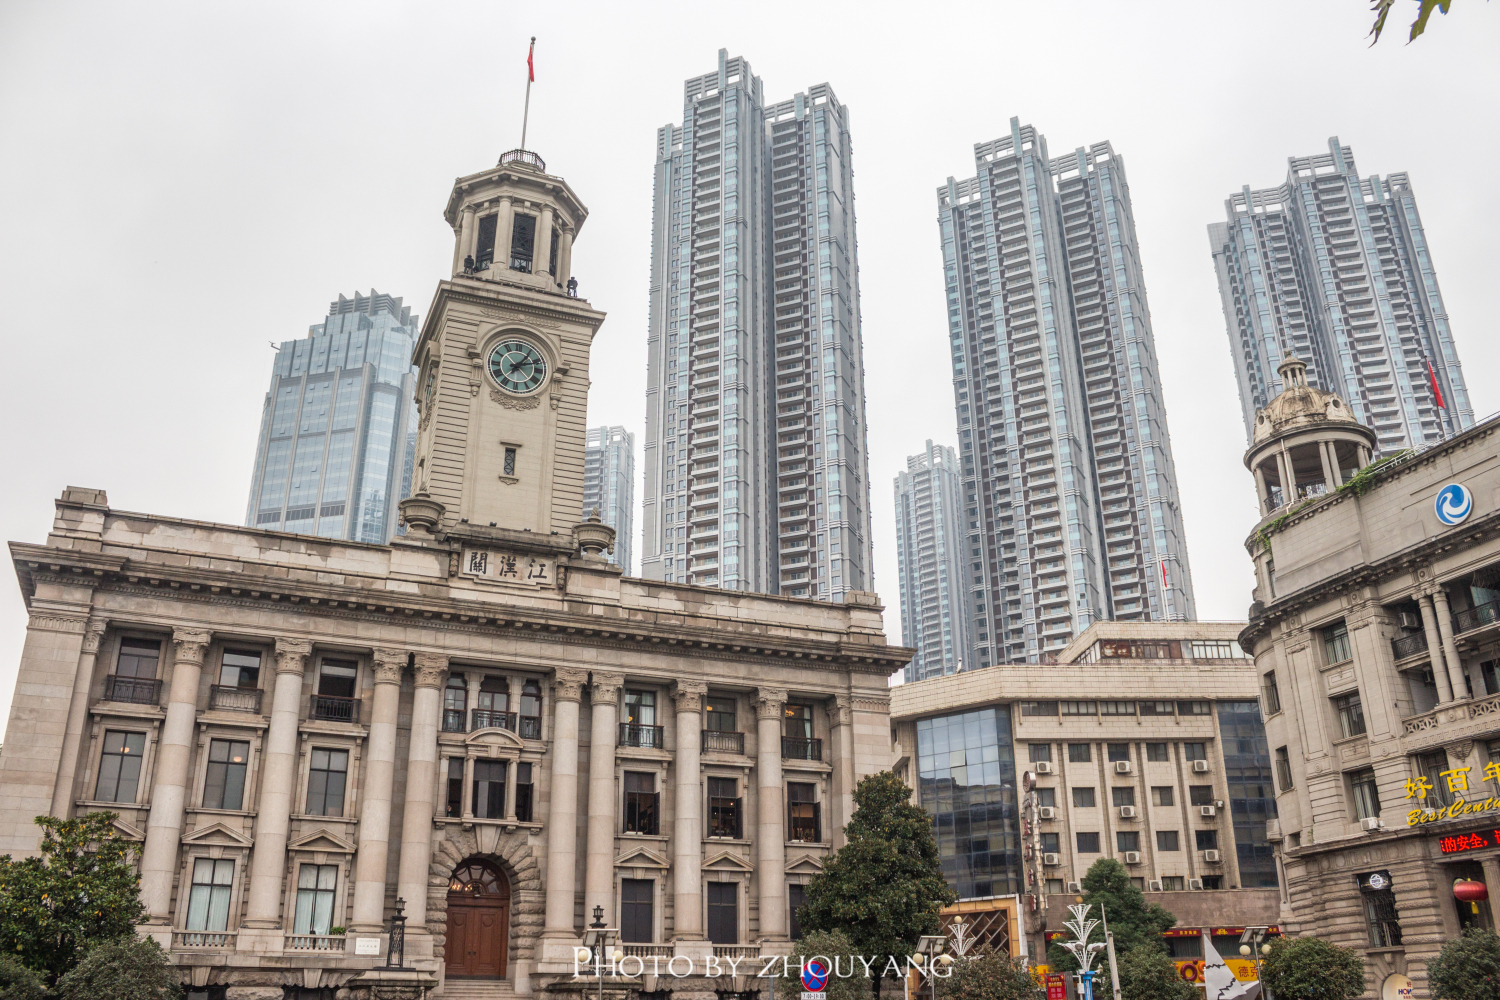 江汉路,武汉著名的百年商业老街,堪称20世纪建筑博物